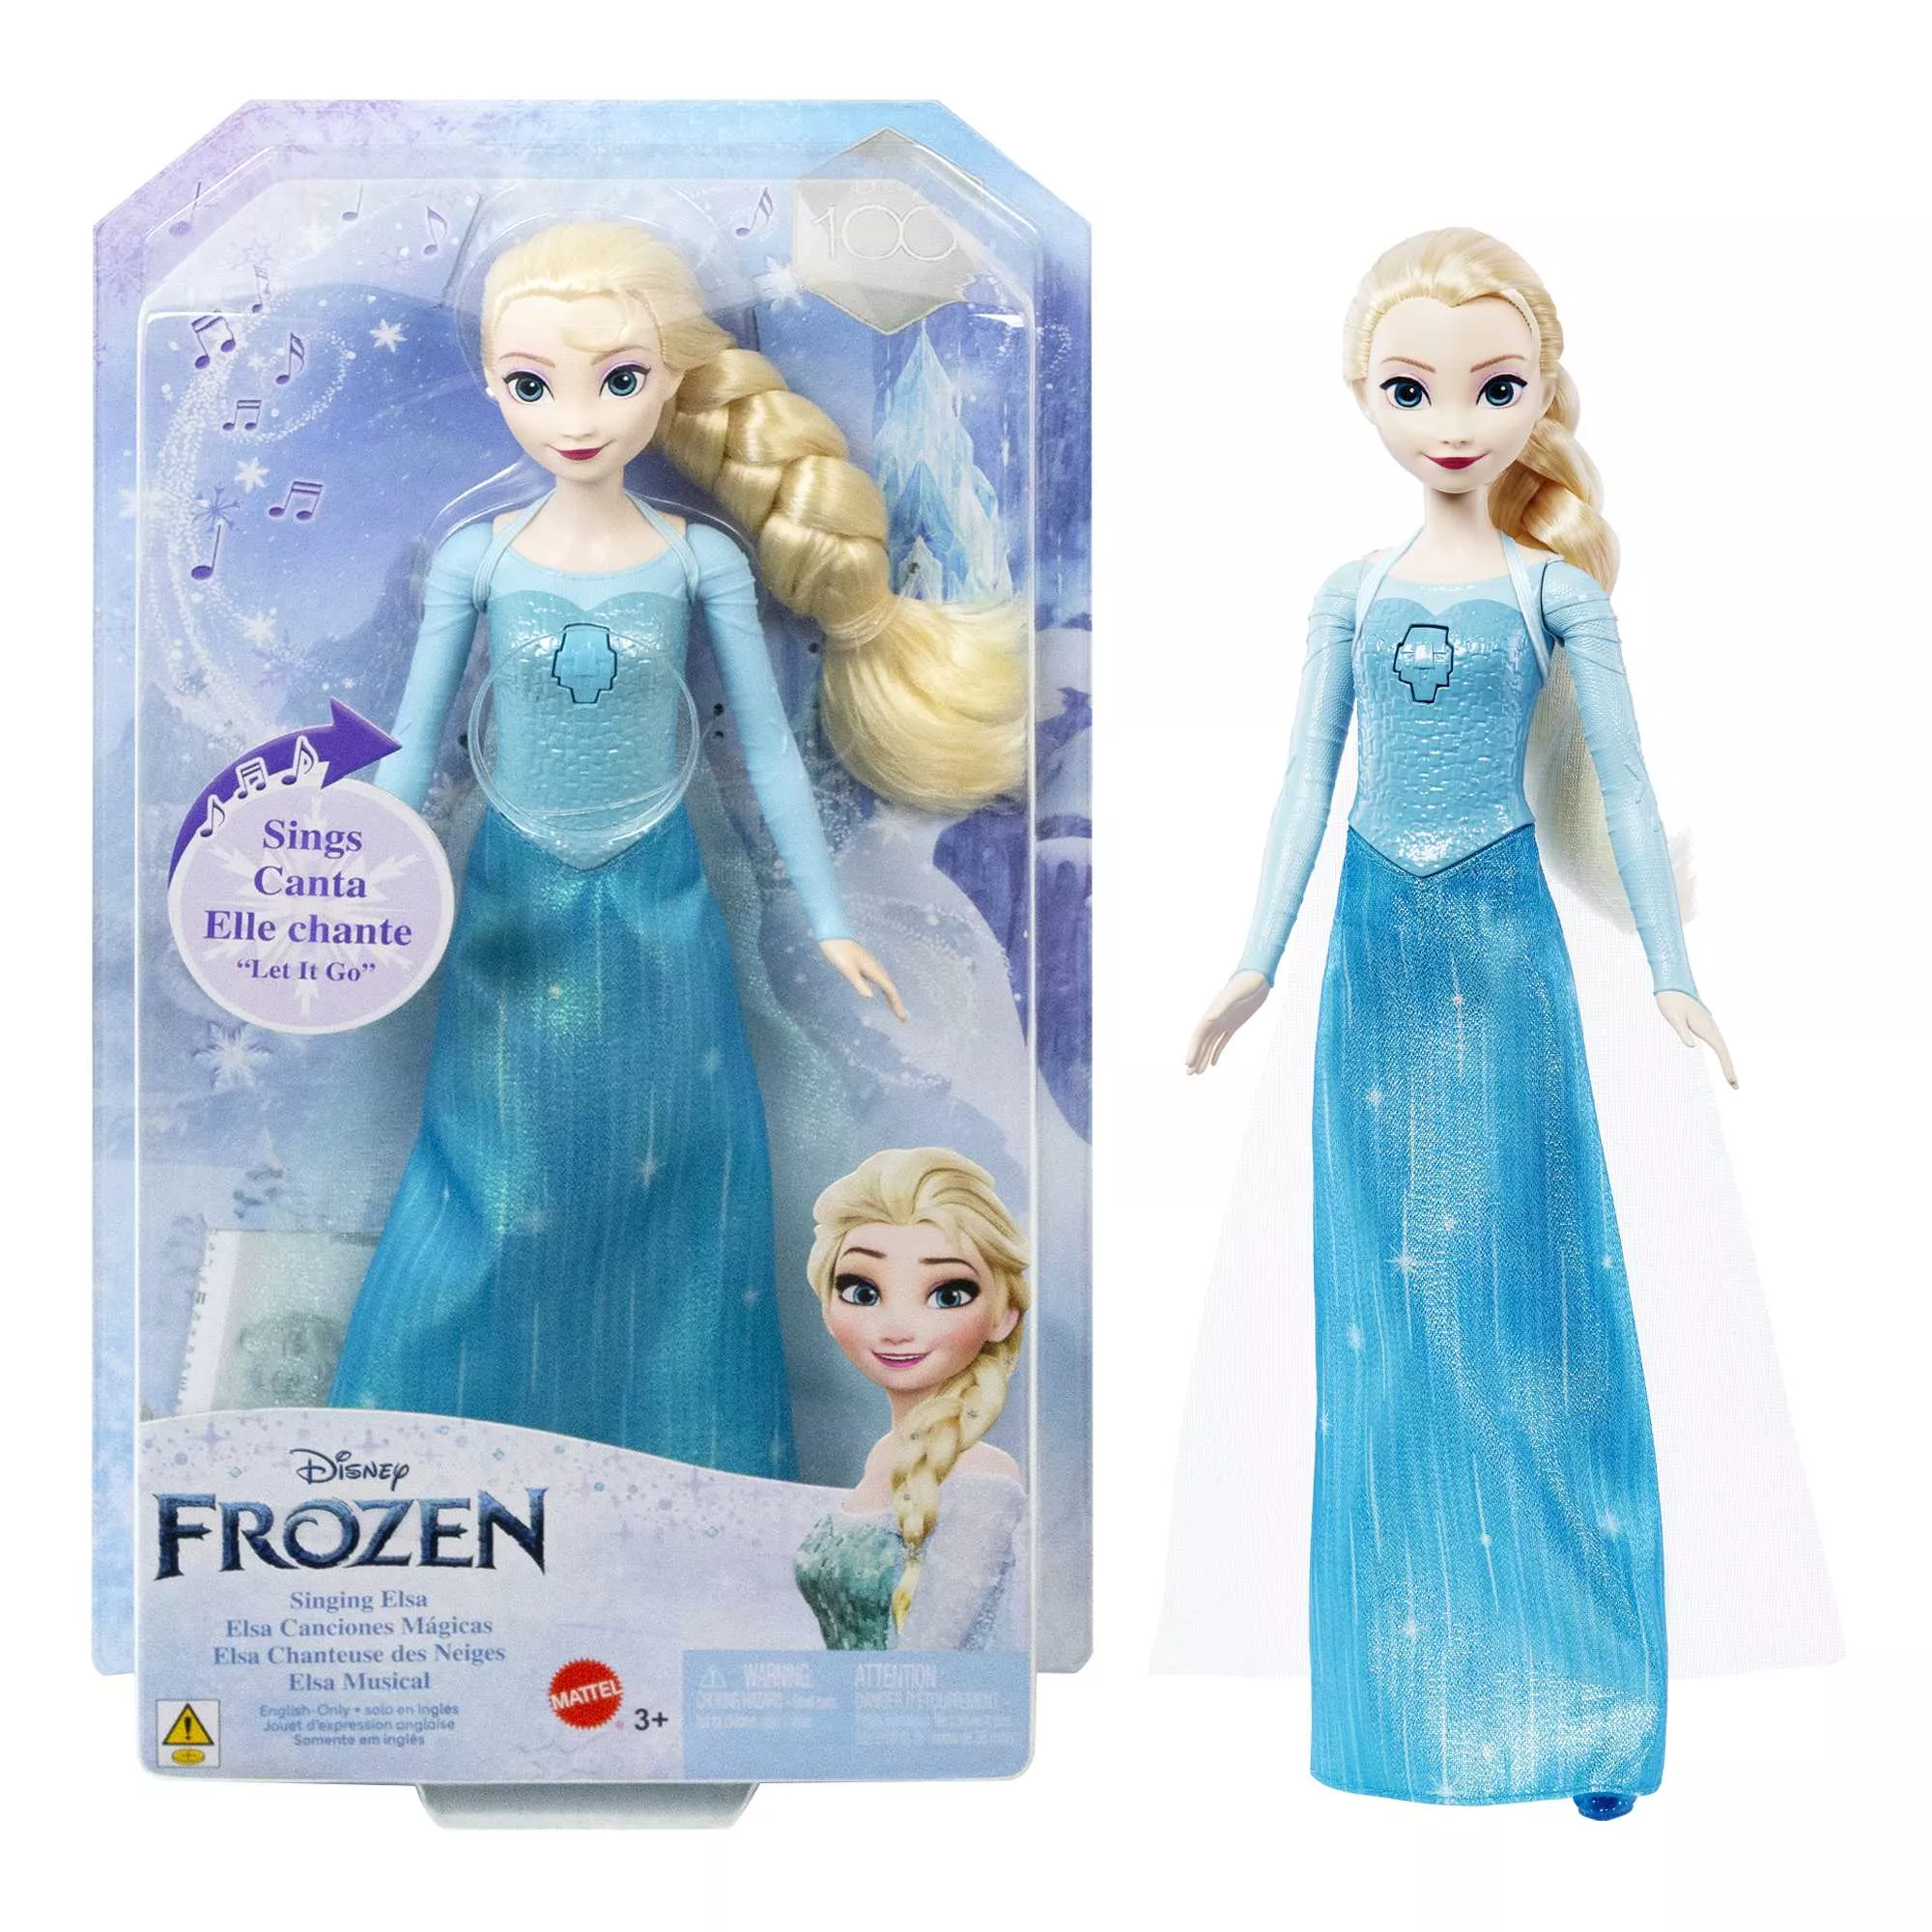 Disneys Die Eiskönigin Elsa, singende Puppe (Frozen) HMG32